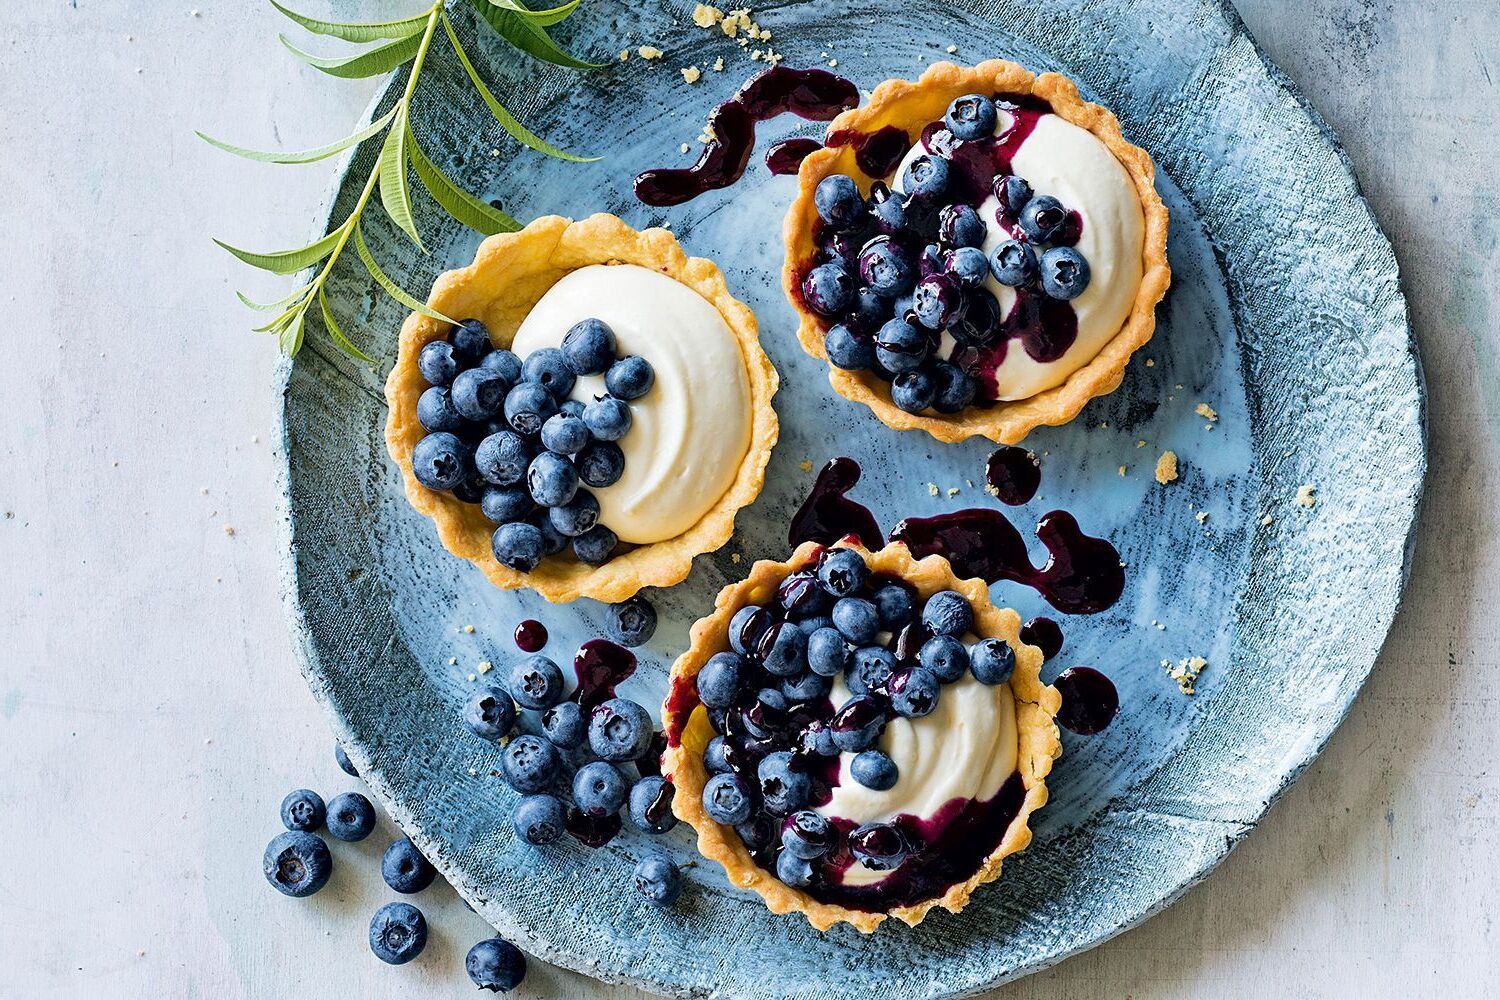 Blueberry and lemon verbena tart.jpg